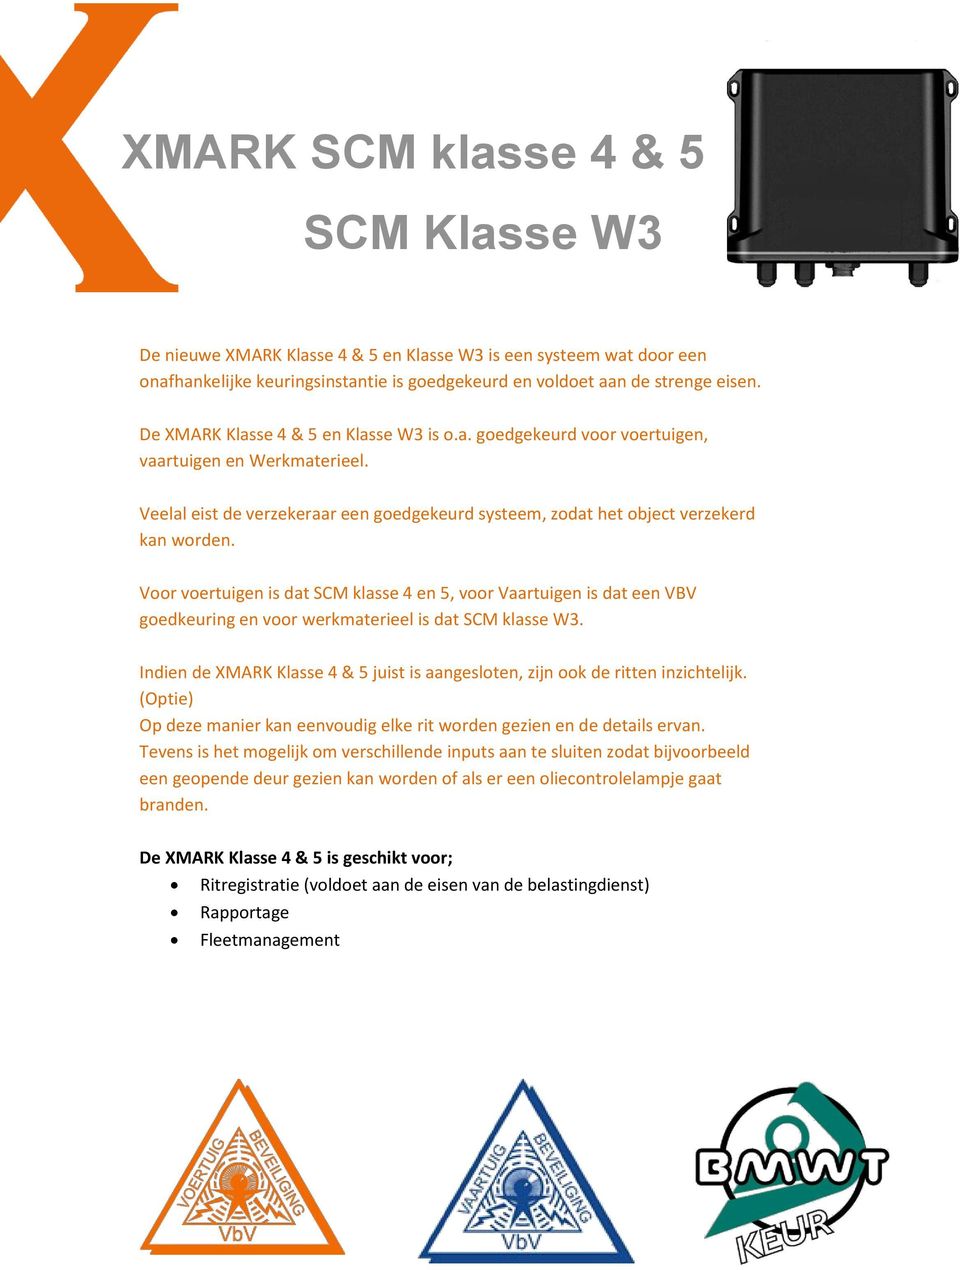 Voor voertuigen is dat SCM klasse 4 en 5, voor Vaartuigen is dat een VBV goedkeuring en voor werkmaterieel is dat SCM klasse W3.